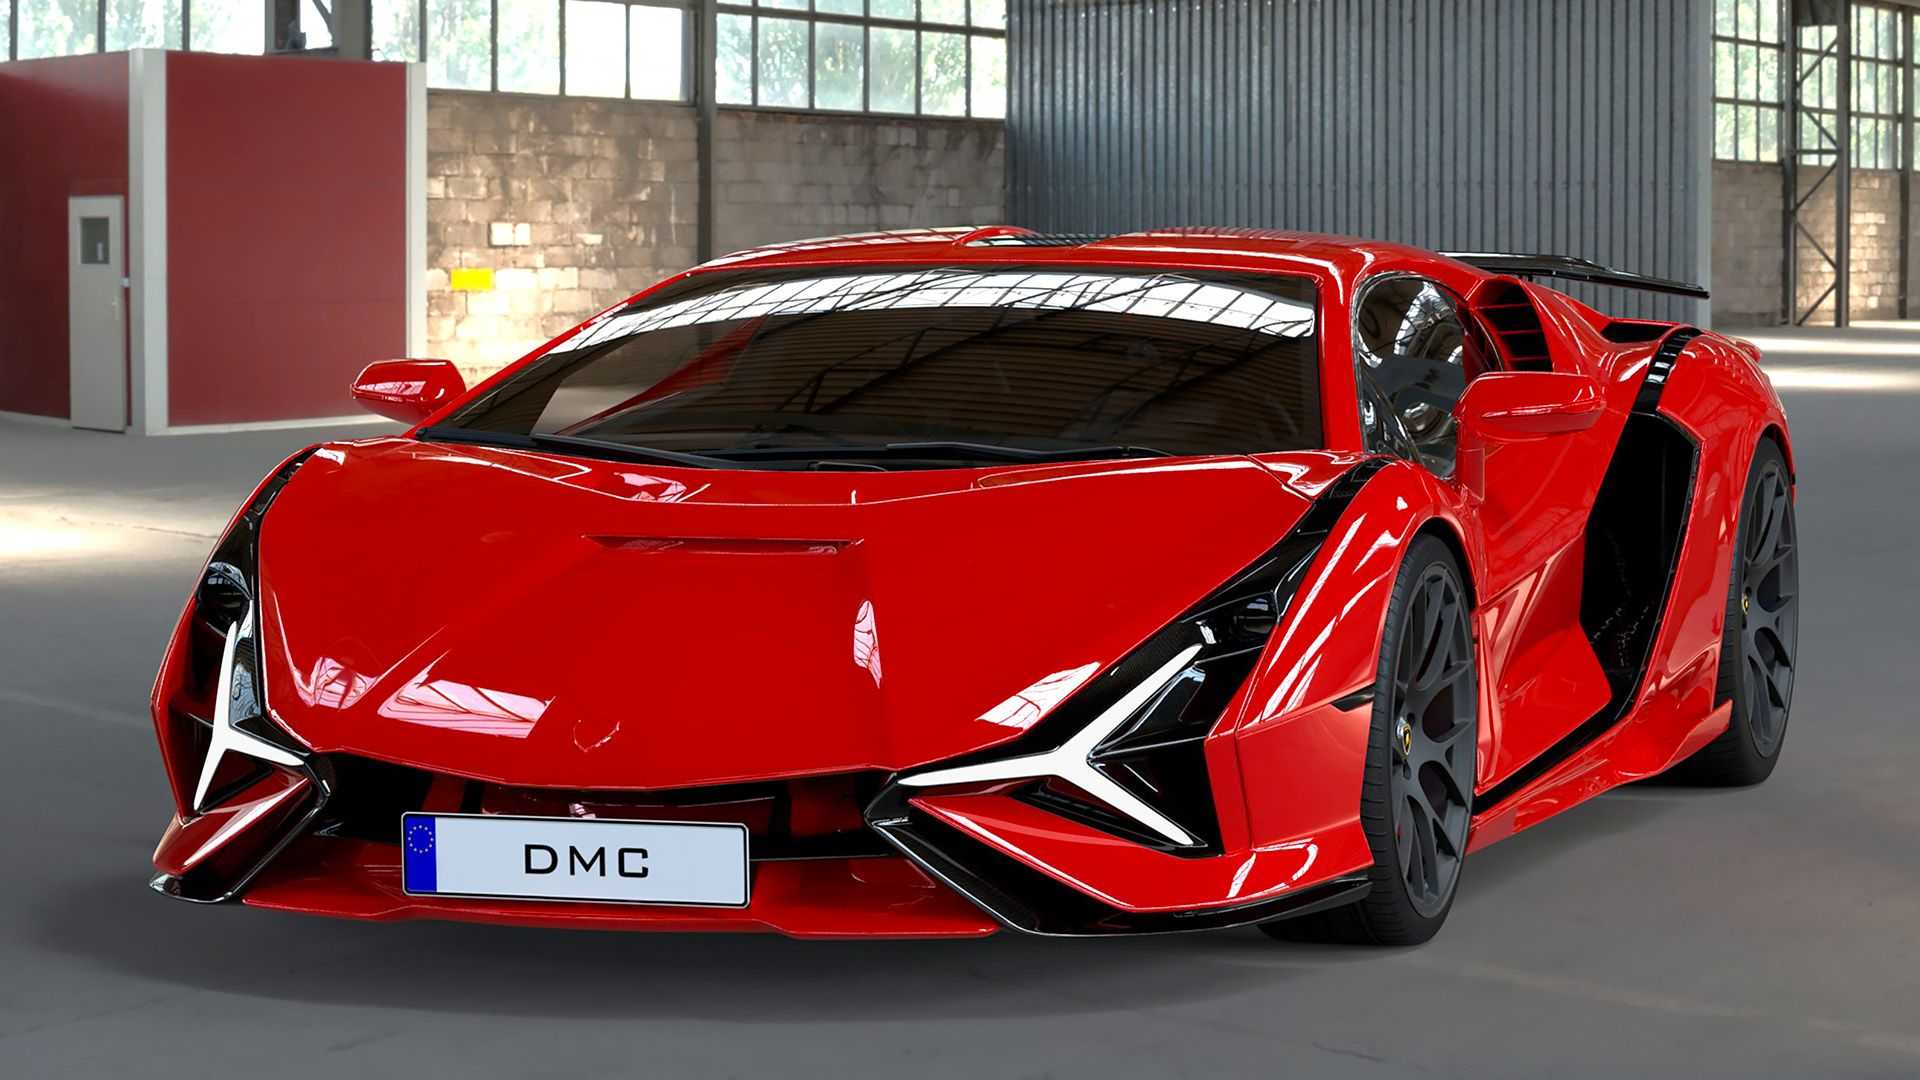 Thiết kế siêu xe Lamborghini mới của DMC